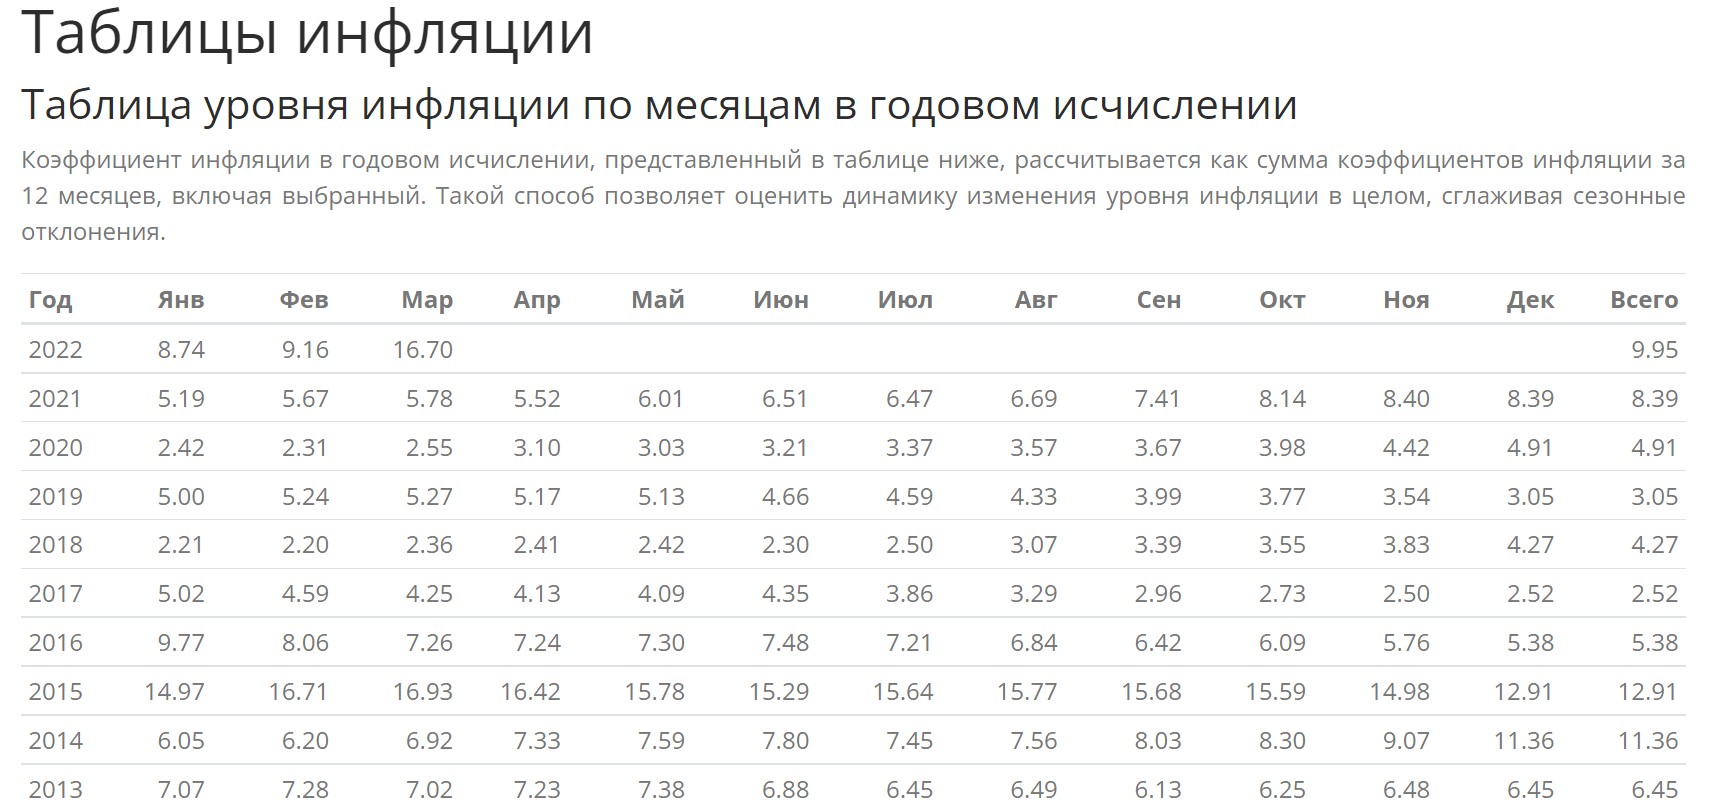 Уровень инфляции в РФ с 2013 по 2022 год по данным Росстата